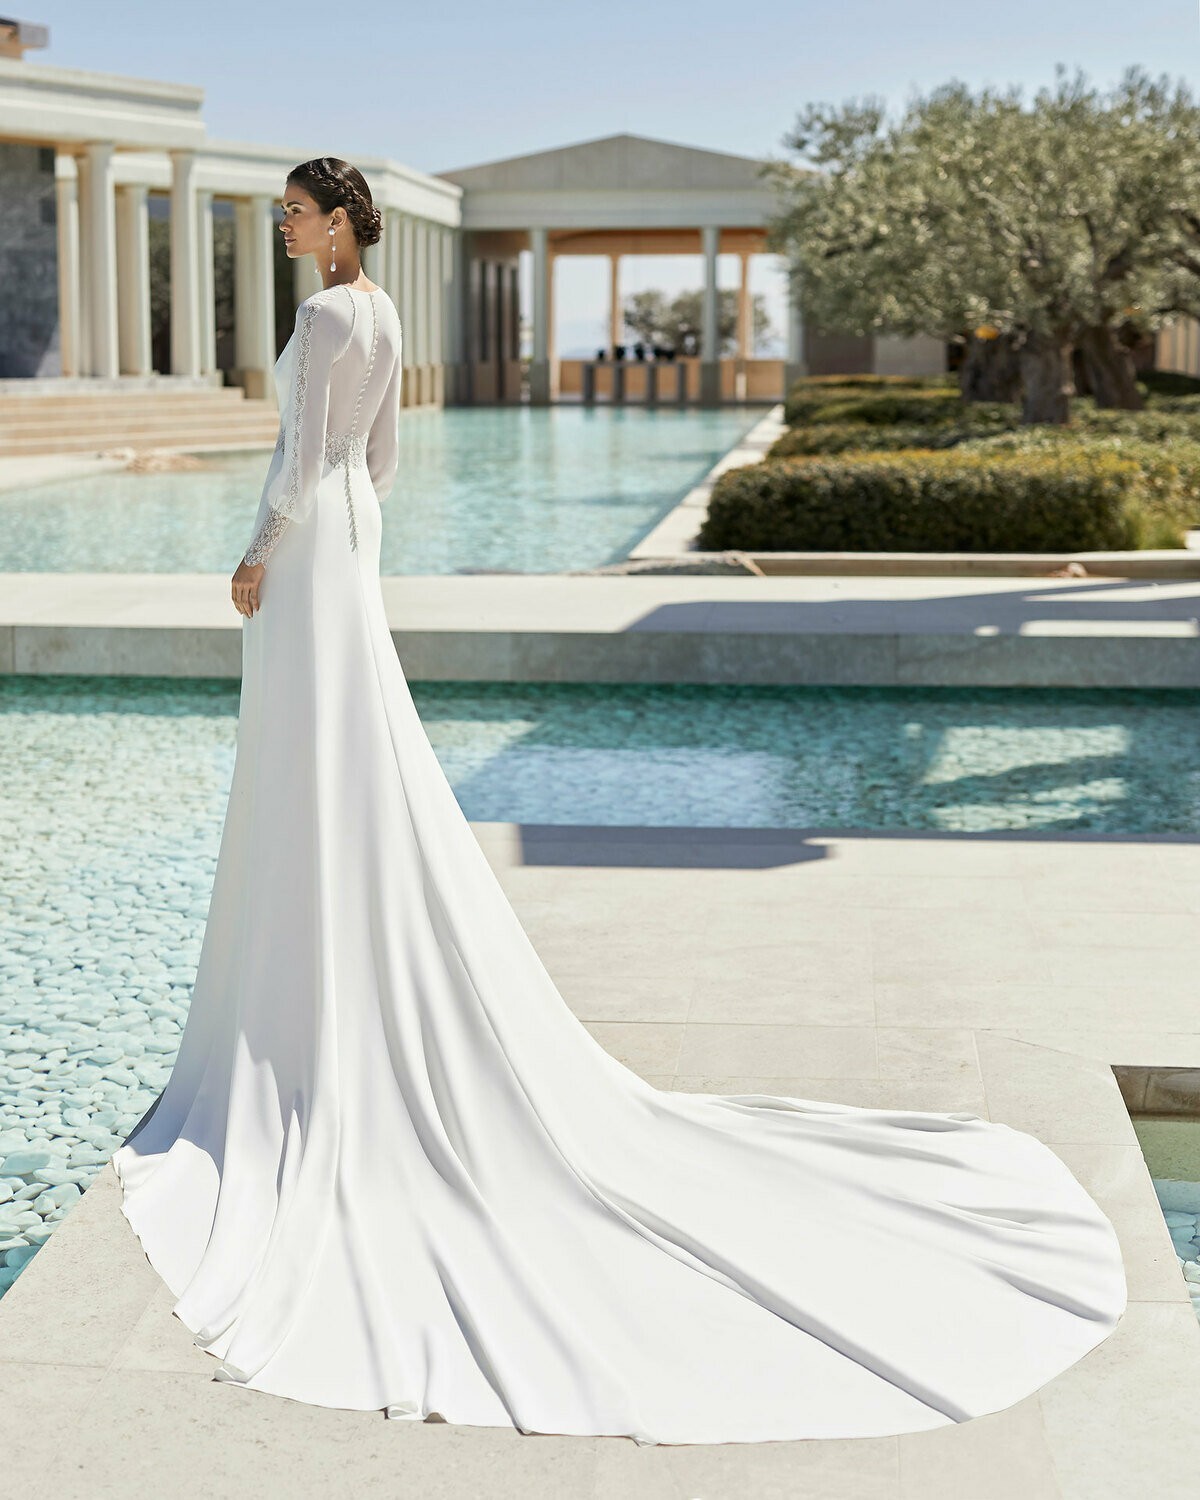 SAIGON - abito da sposa collezione 2020 - Rosa Clarà Couture